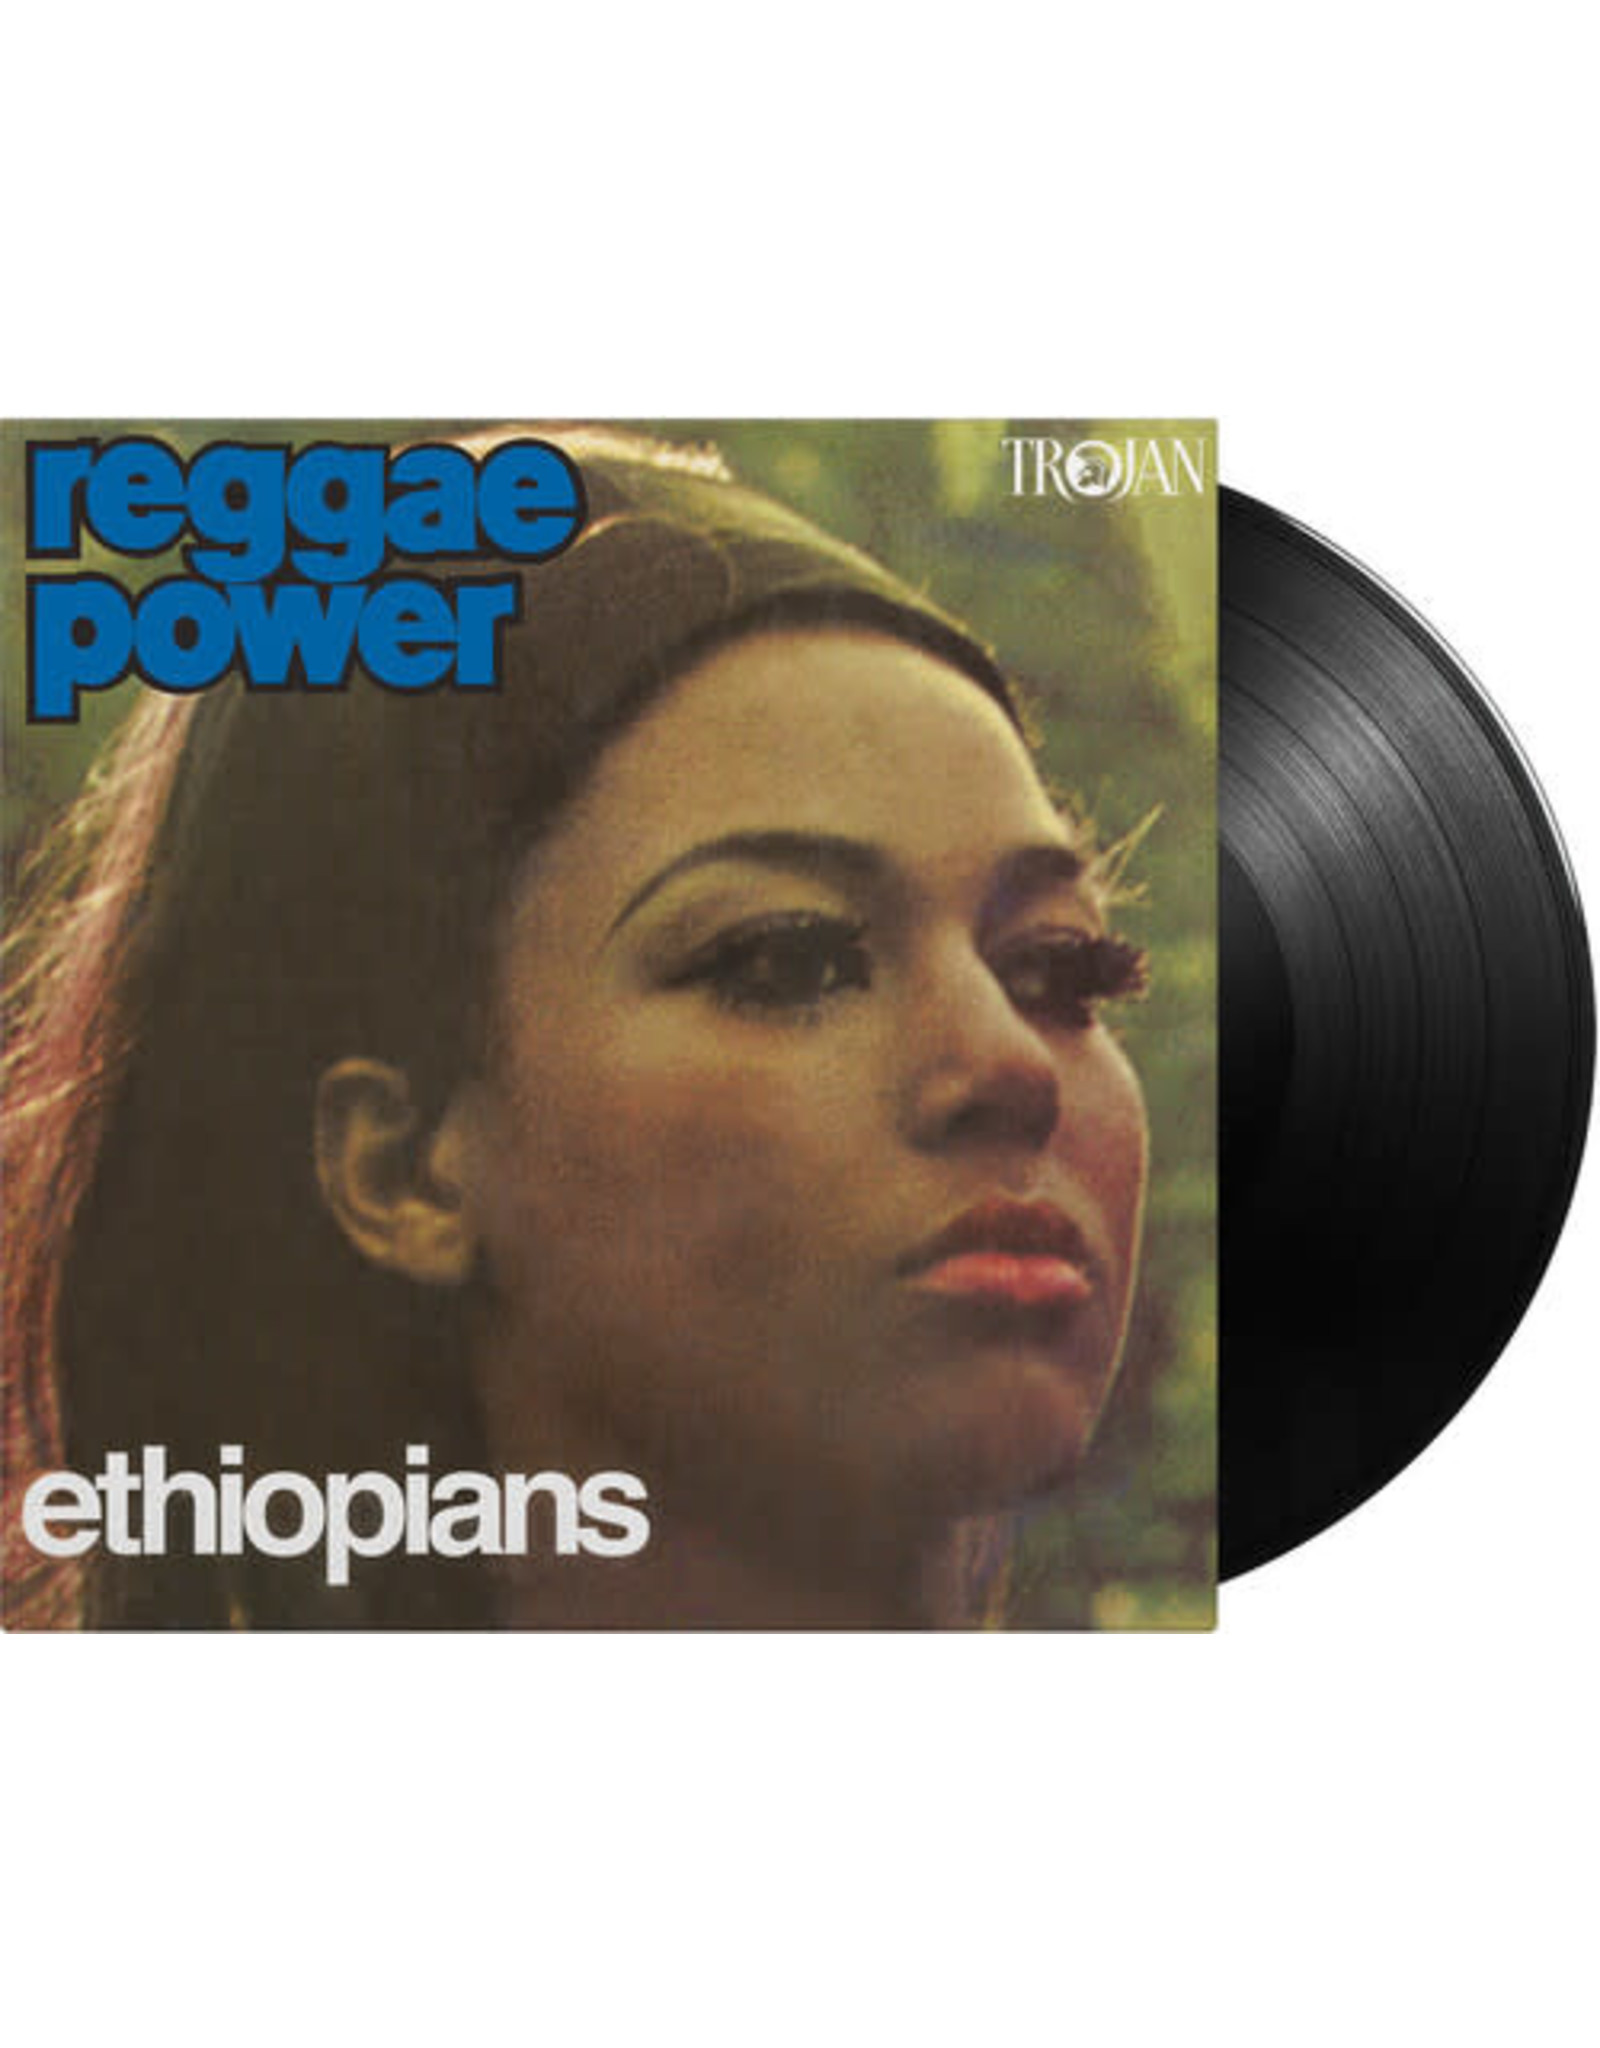 New Vinyl The Ethiopians - Reggae Power [Import] LP